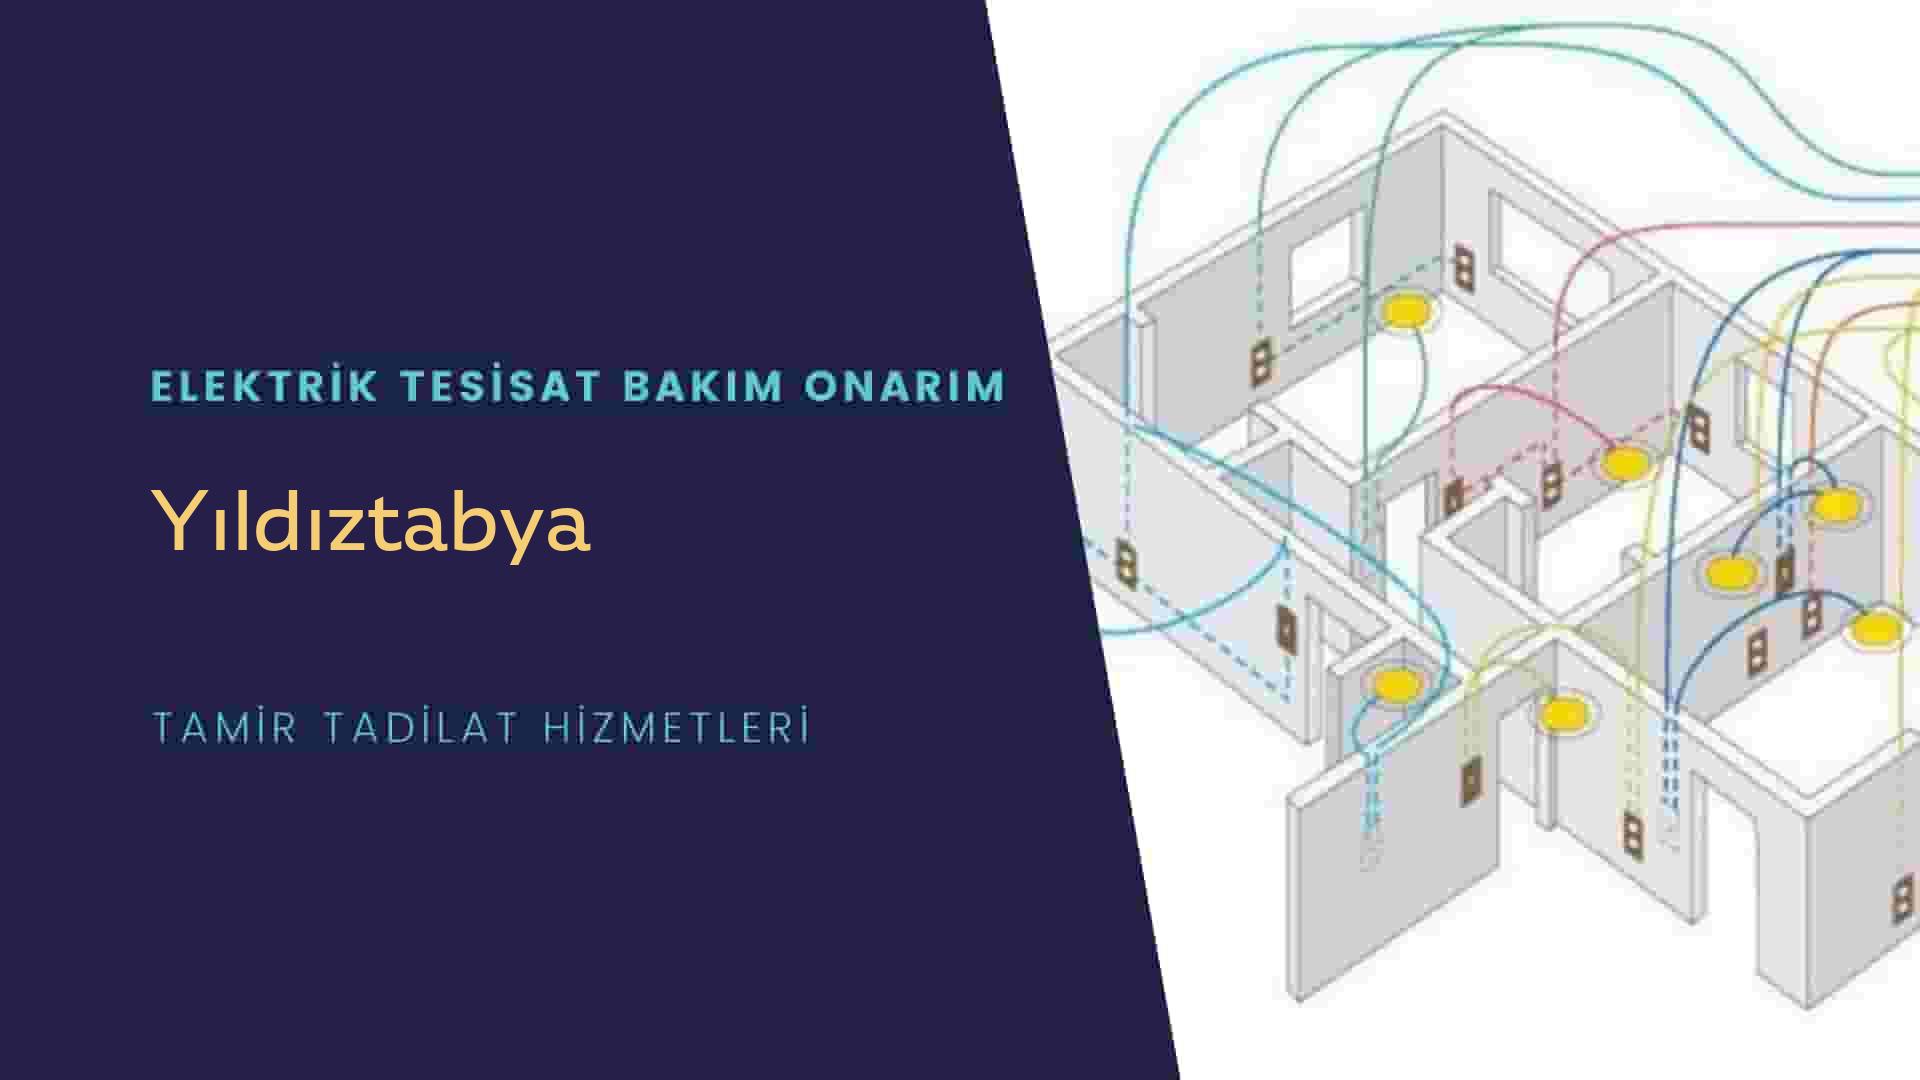 Yıldıztabya'da elektrik tesisatı ustalarımı arıyorsunuz doğru adrestenizi Yıldıztabya elektrik tesisatı ustalarımız 7/24 sizlere hizmet vermekten mutluluk duyar.